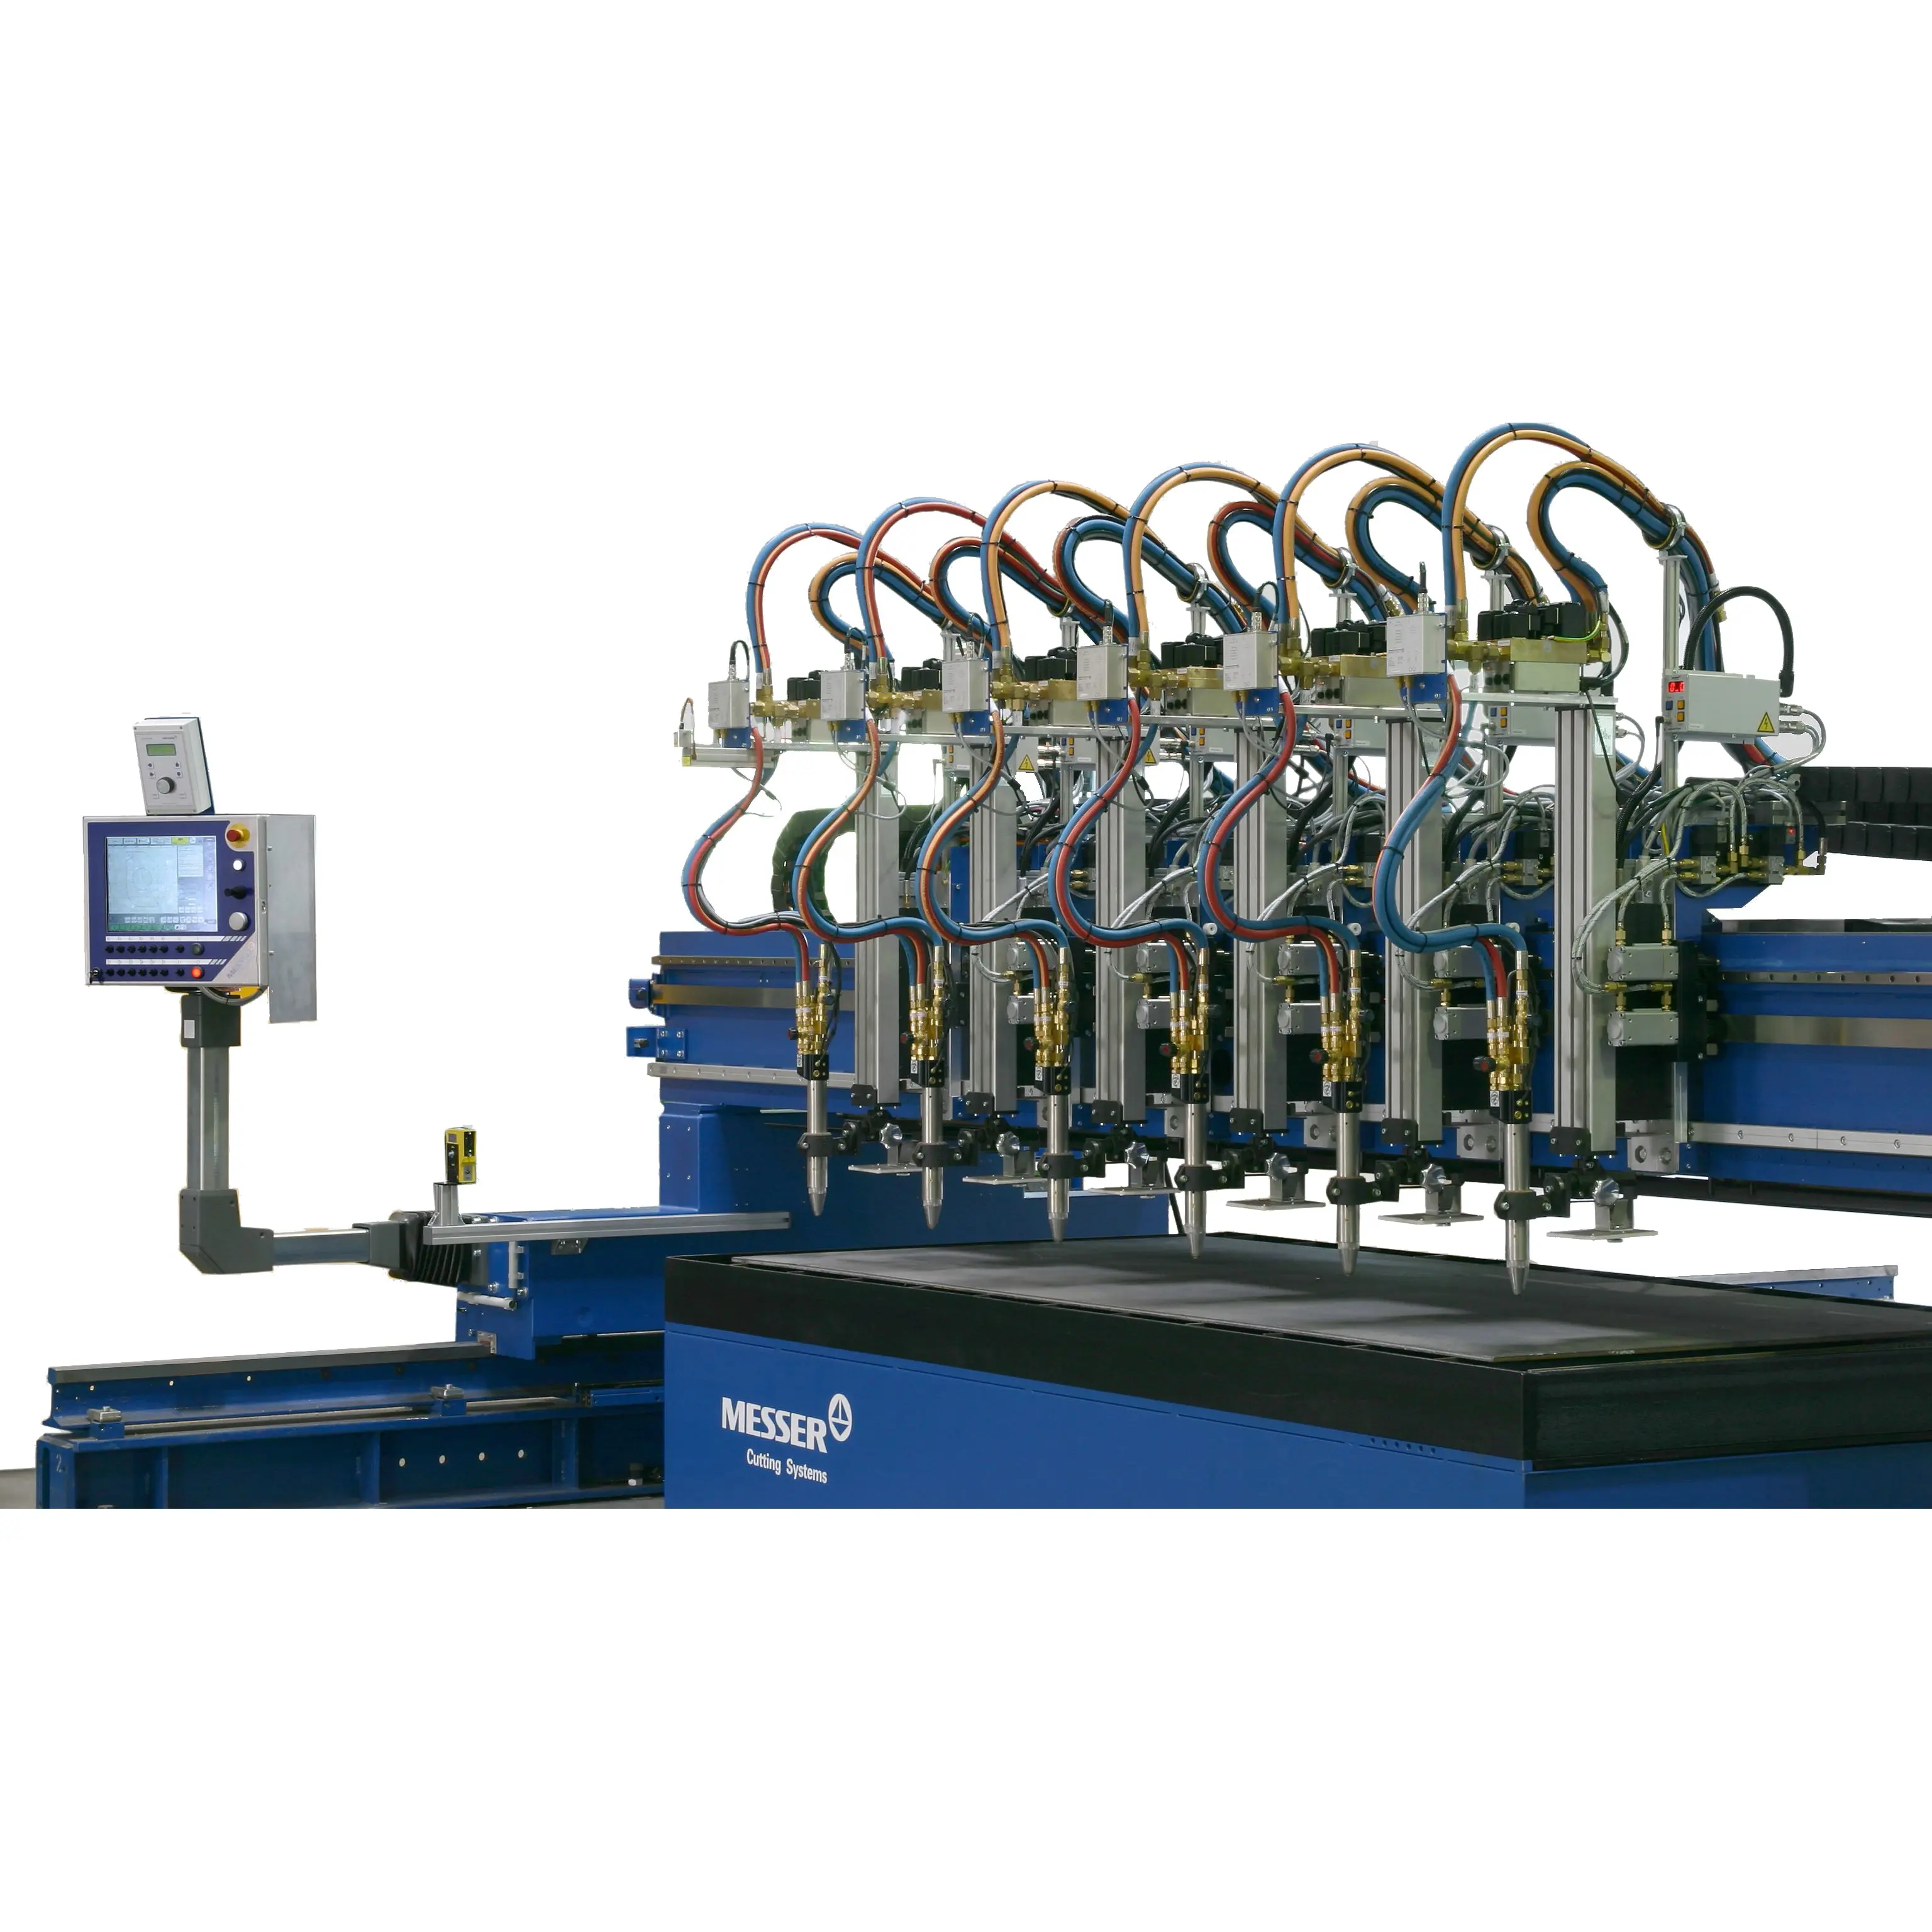 Messer omniat T mesin pemotong CNC, mesin pemotong Gas Plasma otomatis tipe ALFA Torch Gantry T